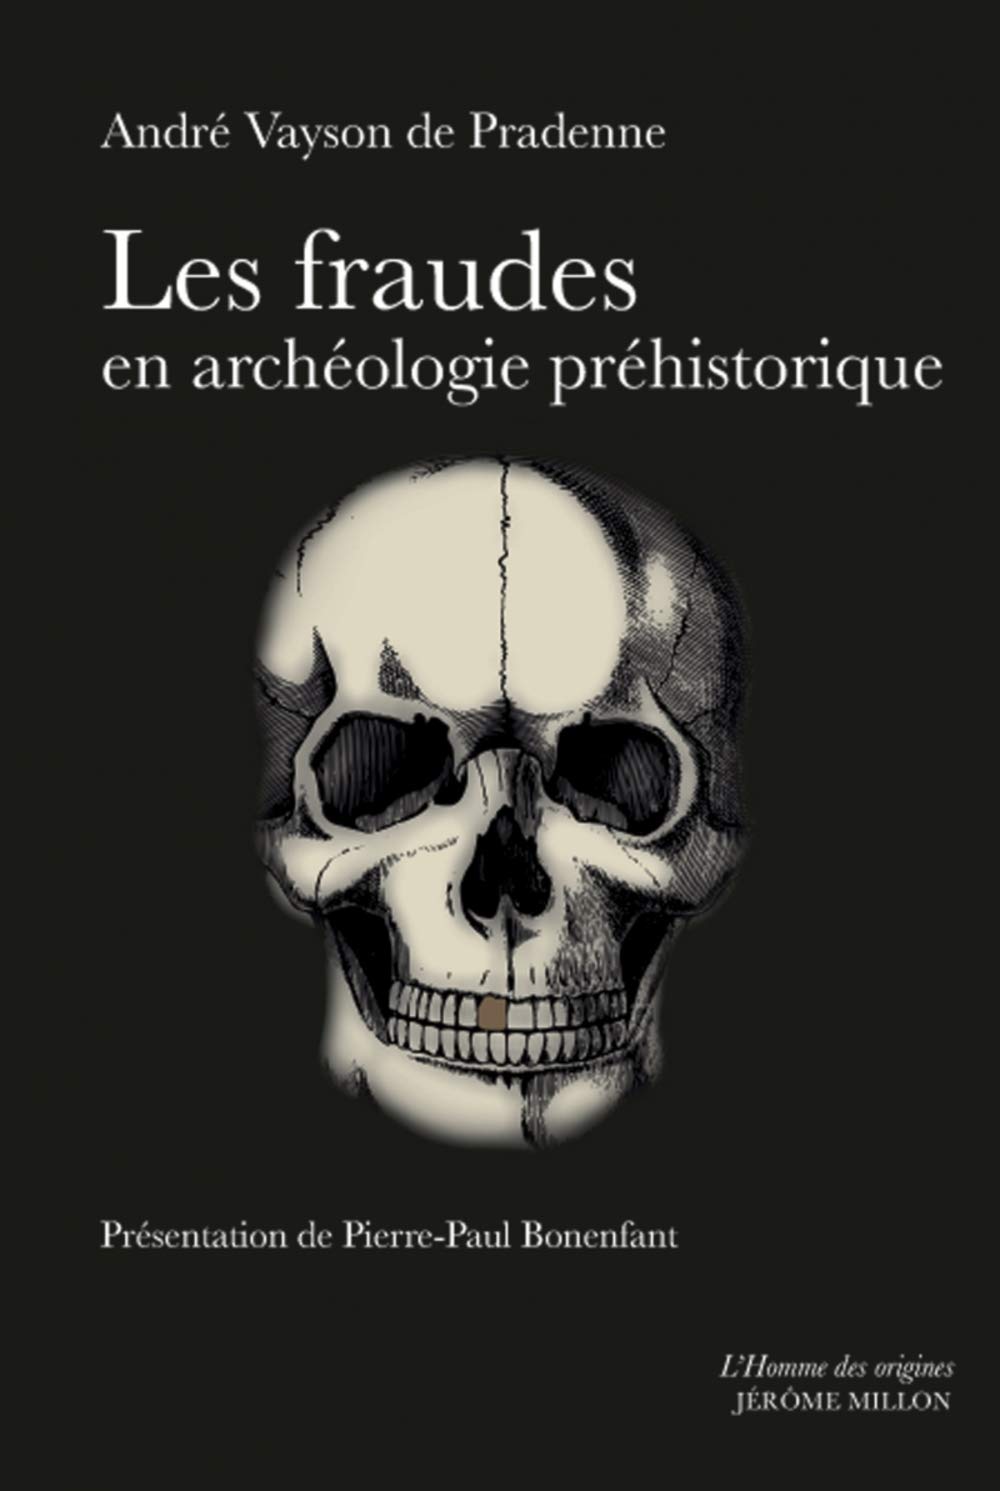 Les fraudes en archéologie préhistorique, 2018, 512 p.